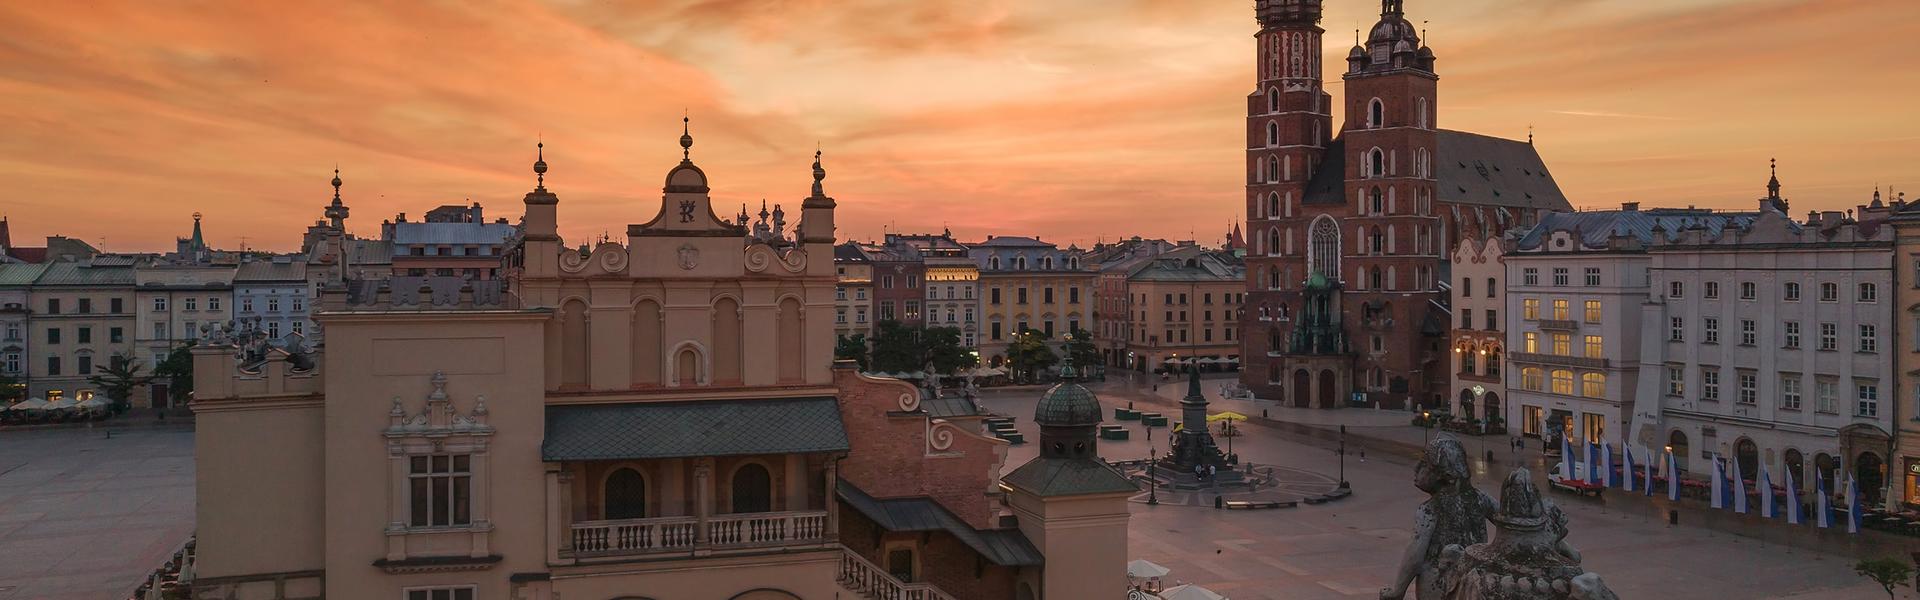 Obrazek: Dlaczego warto odwiedzić Kraków i Małopolskę? Prezentacja projektu „Małopolska – cel podróży”.